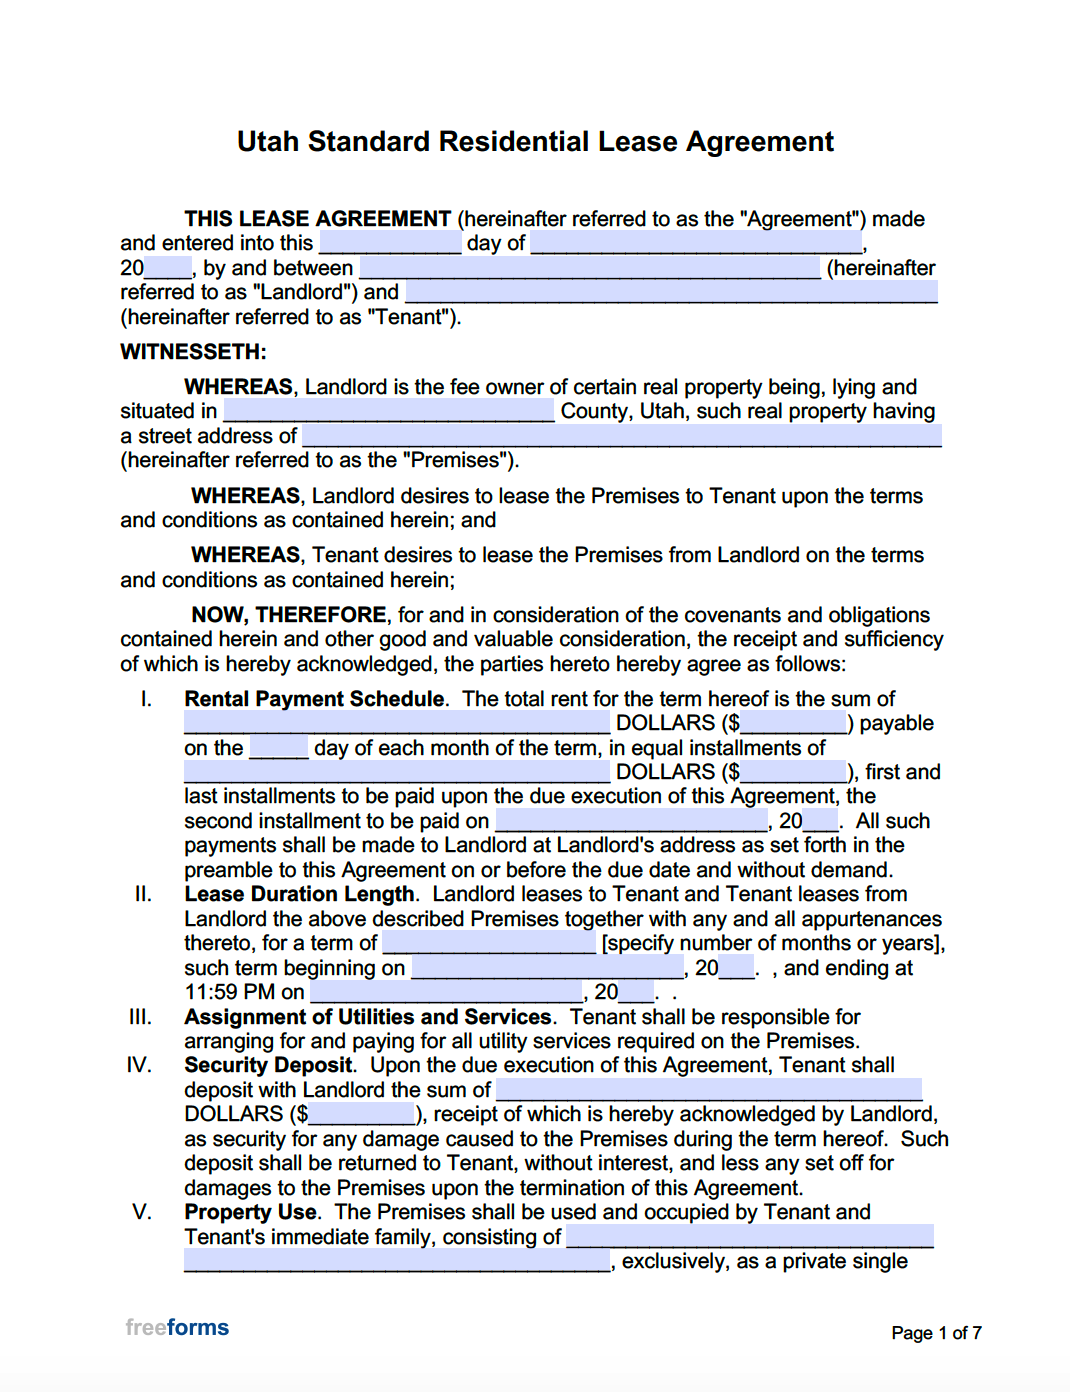 Free Utah Standard Residential Lease Agreement Template PDF WORD